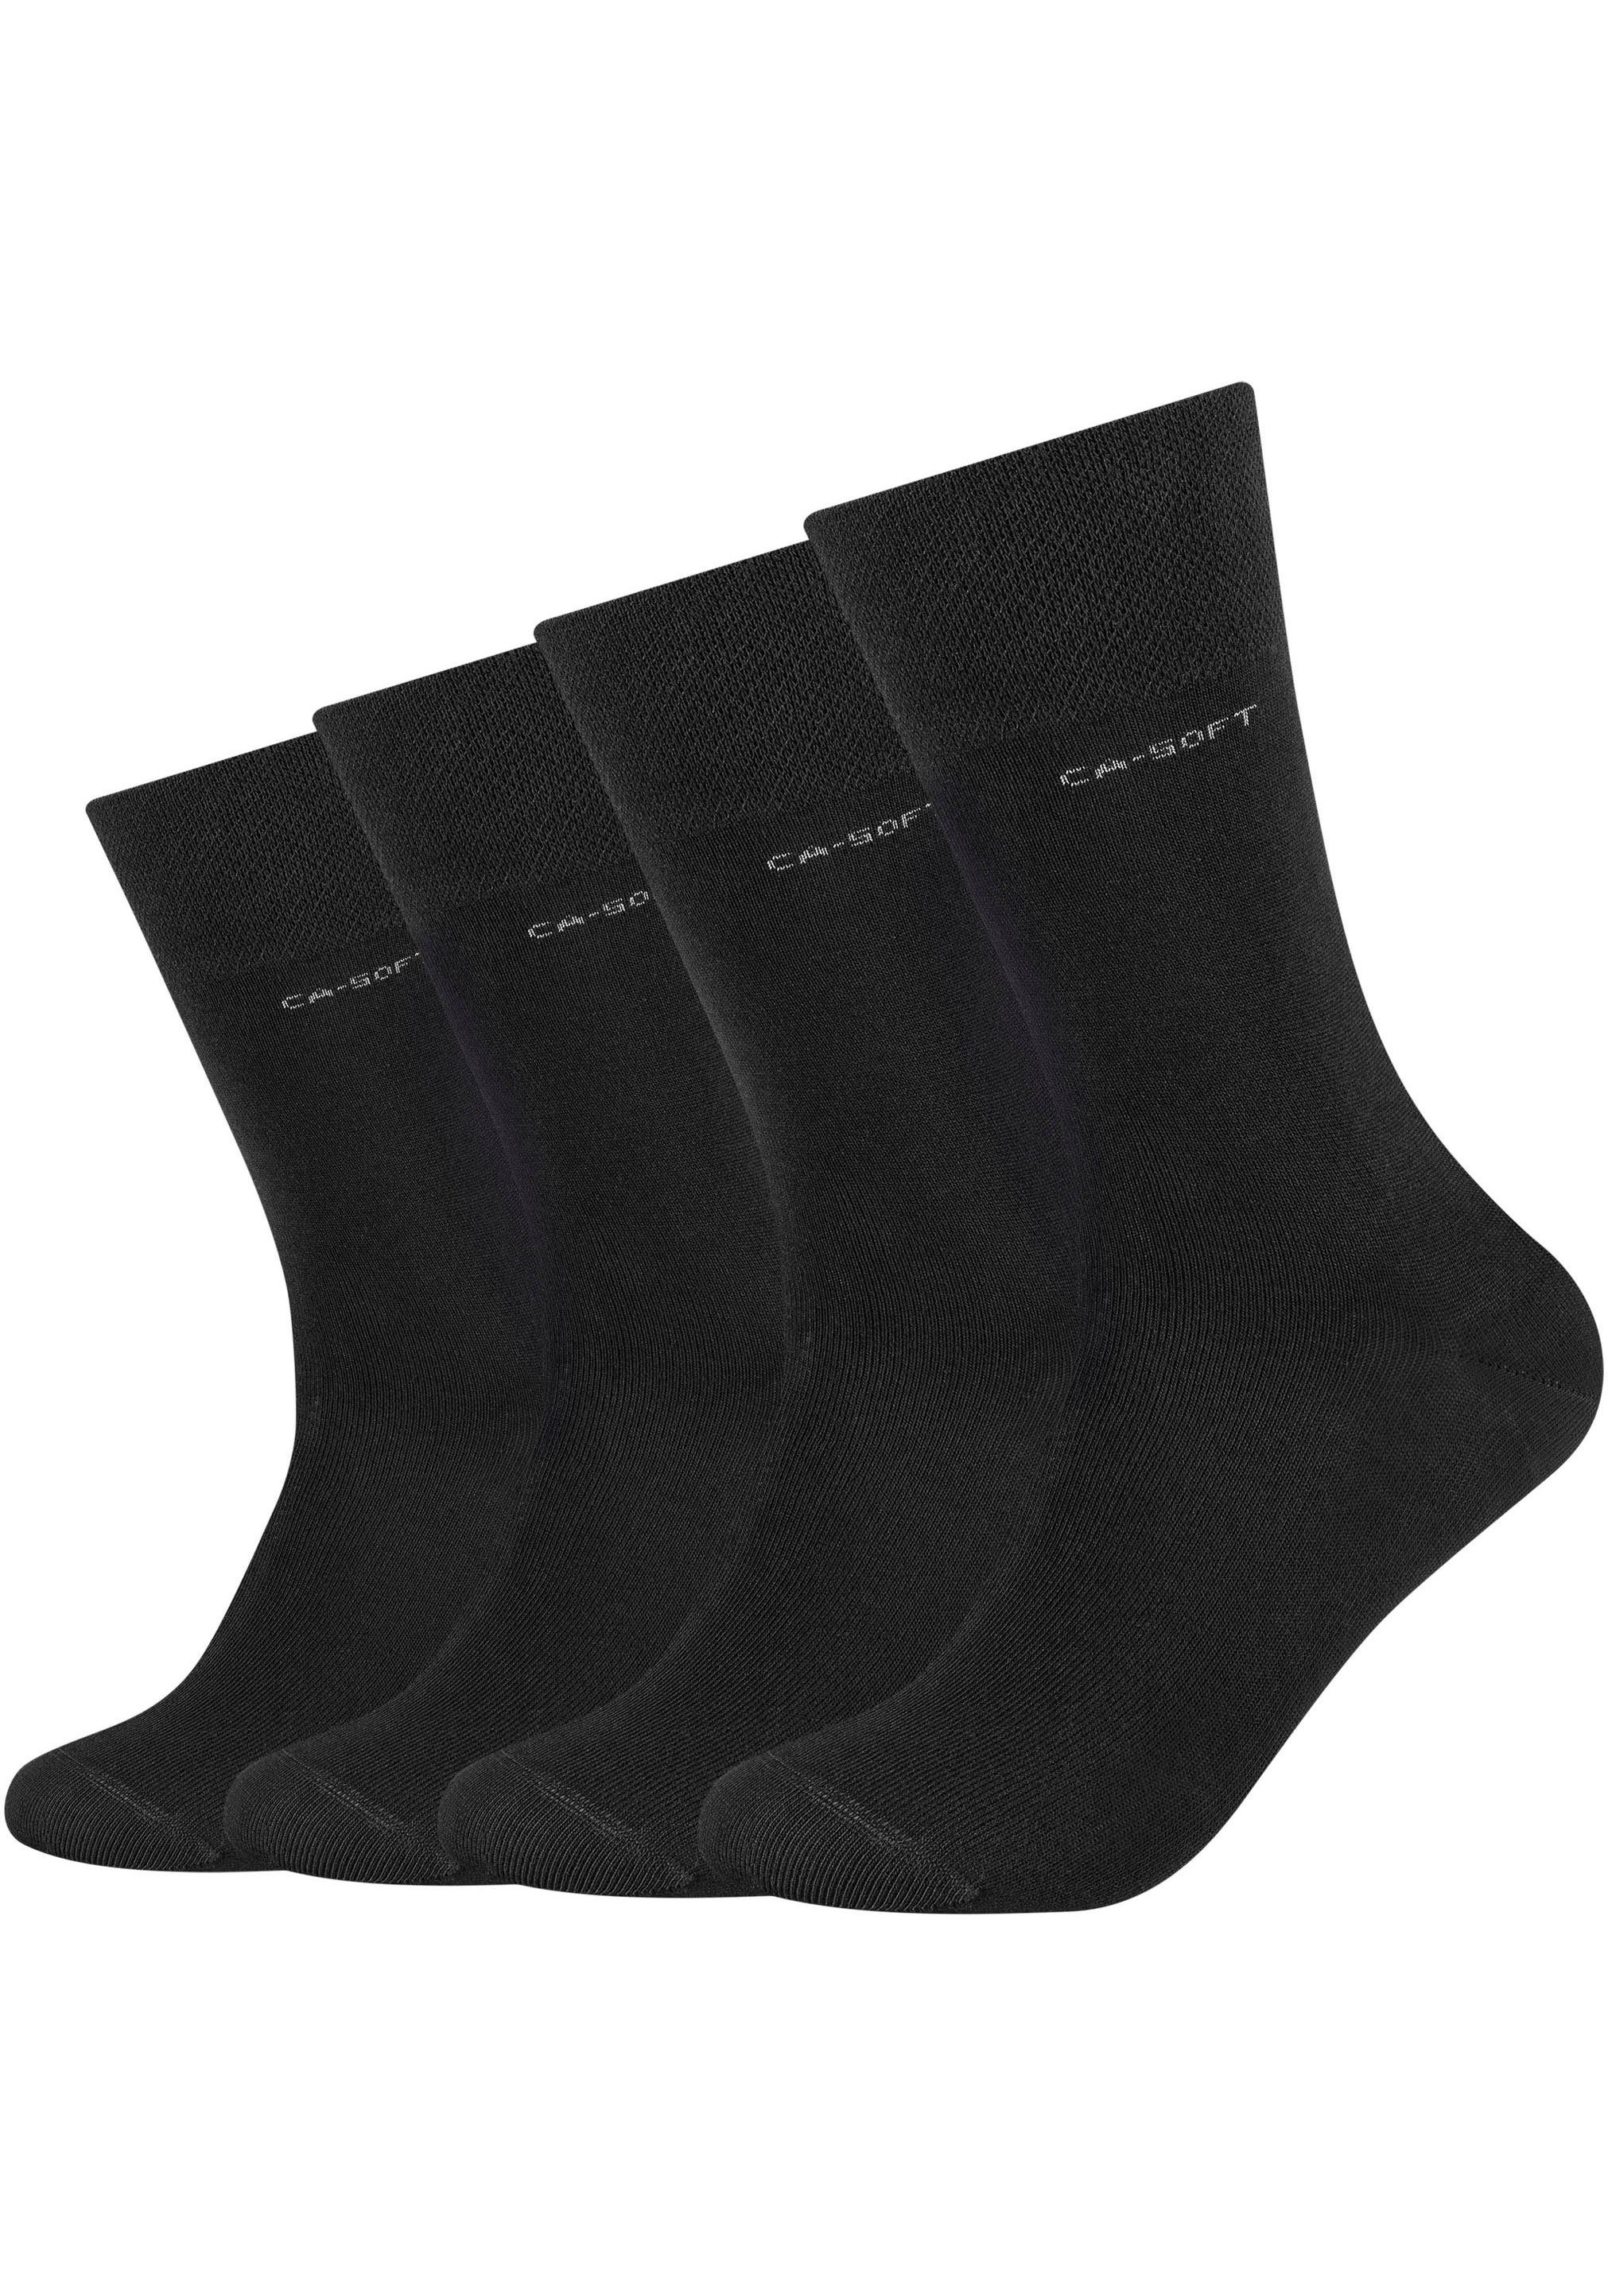 Socken Fersen- schwarz 4-Paar) und verstärktem (Packung, Camano Mit Zehenbereich